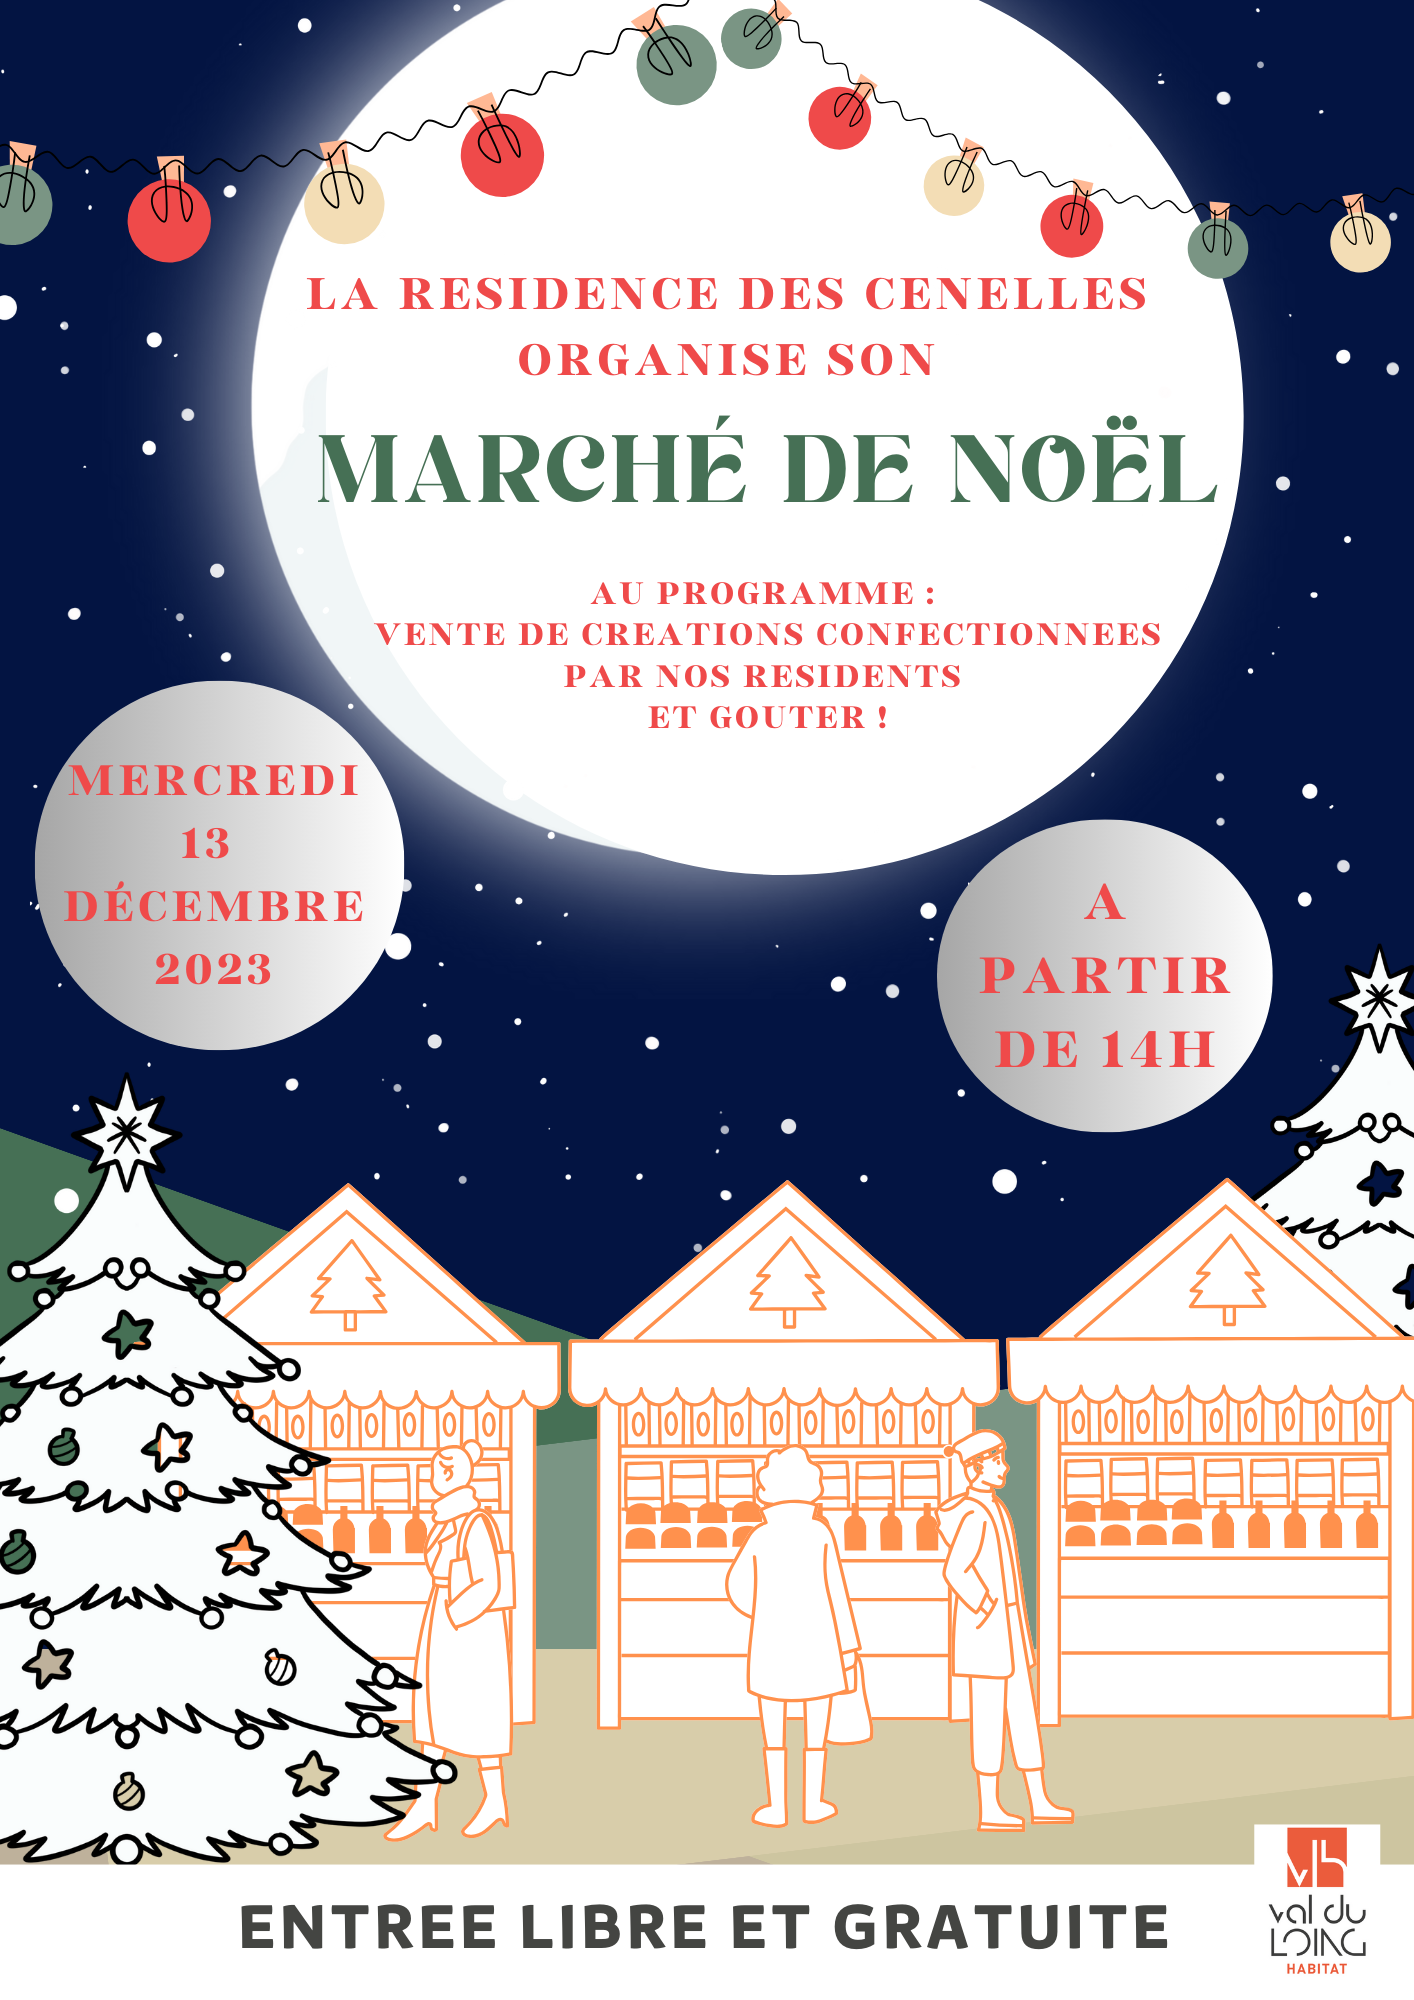 Marché de Noël 2023 - Résidence Les Cenelles